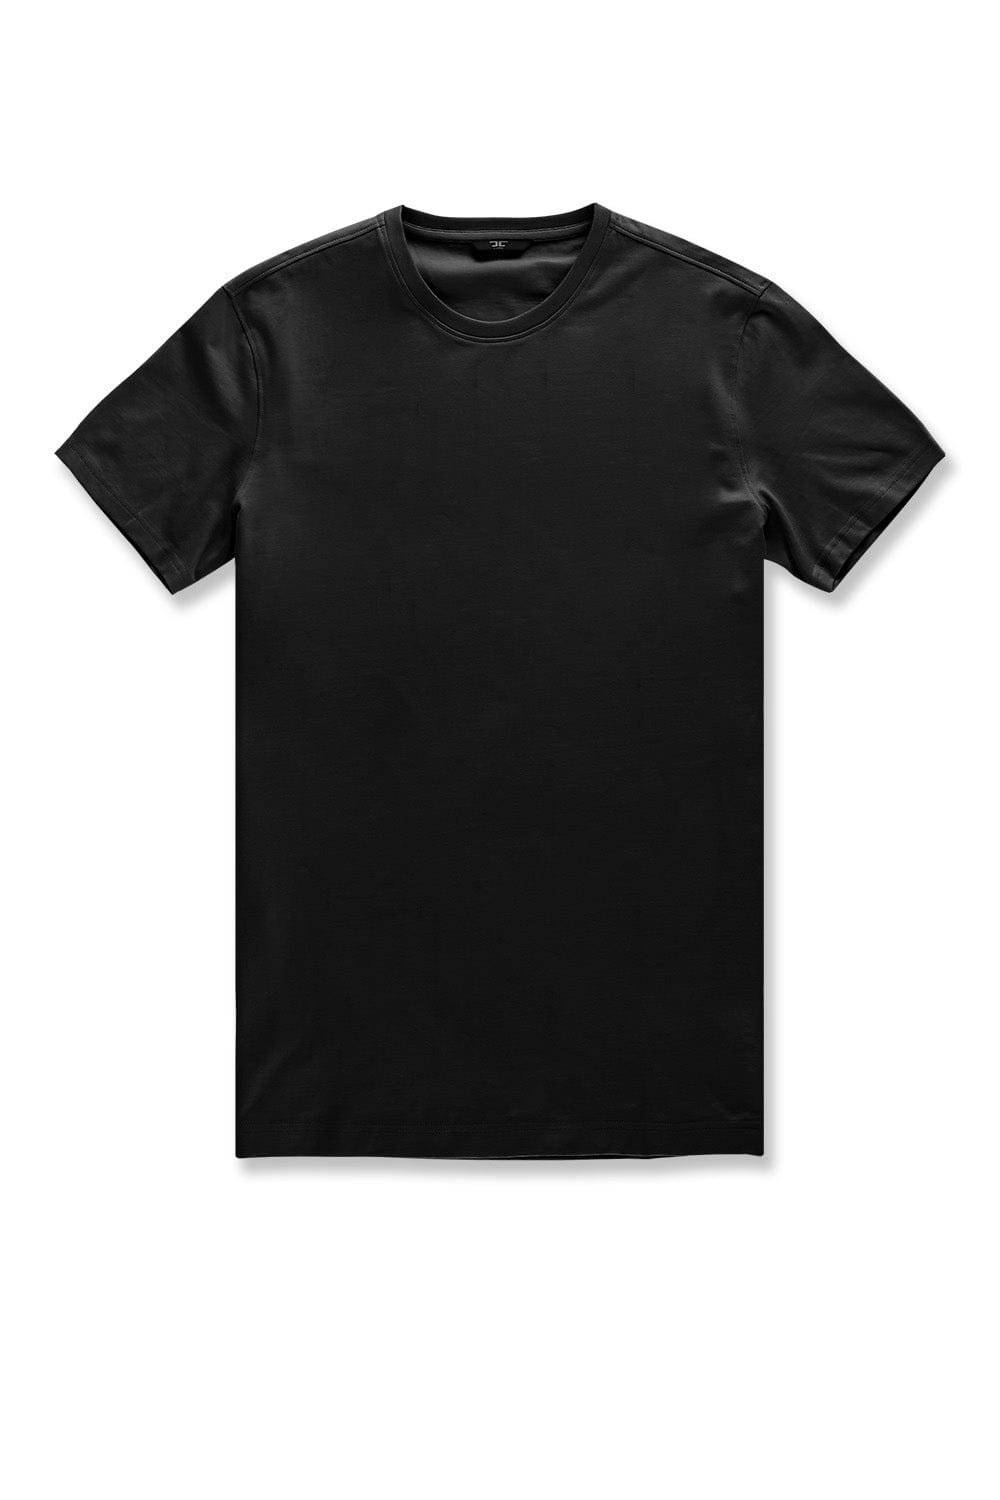 JC Big Men Big Men's Premium Crewneck T-Shirt Black / 4XL